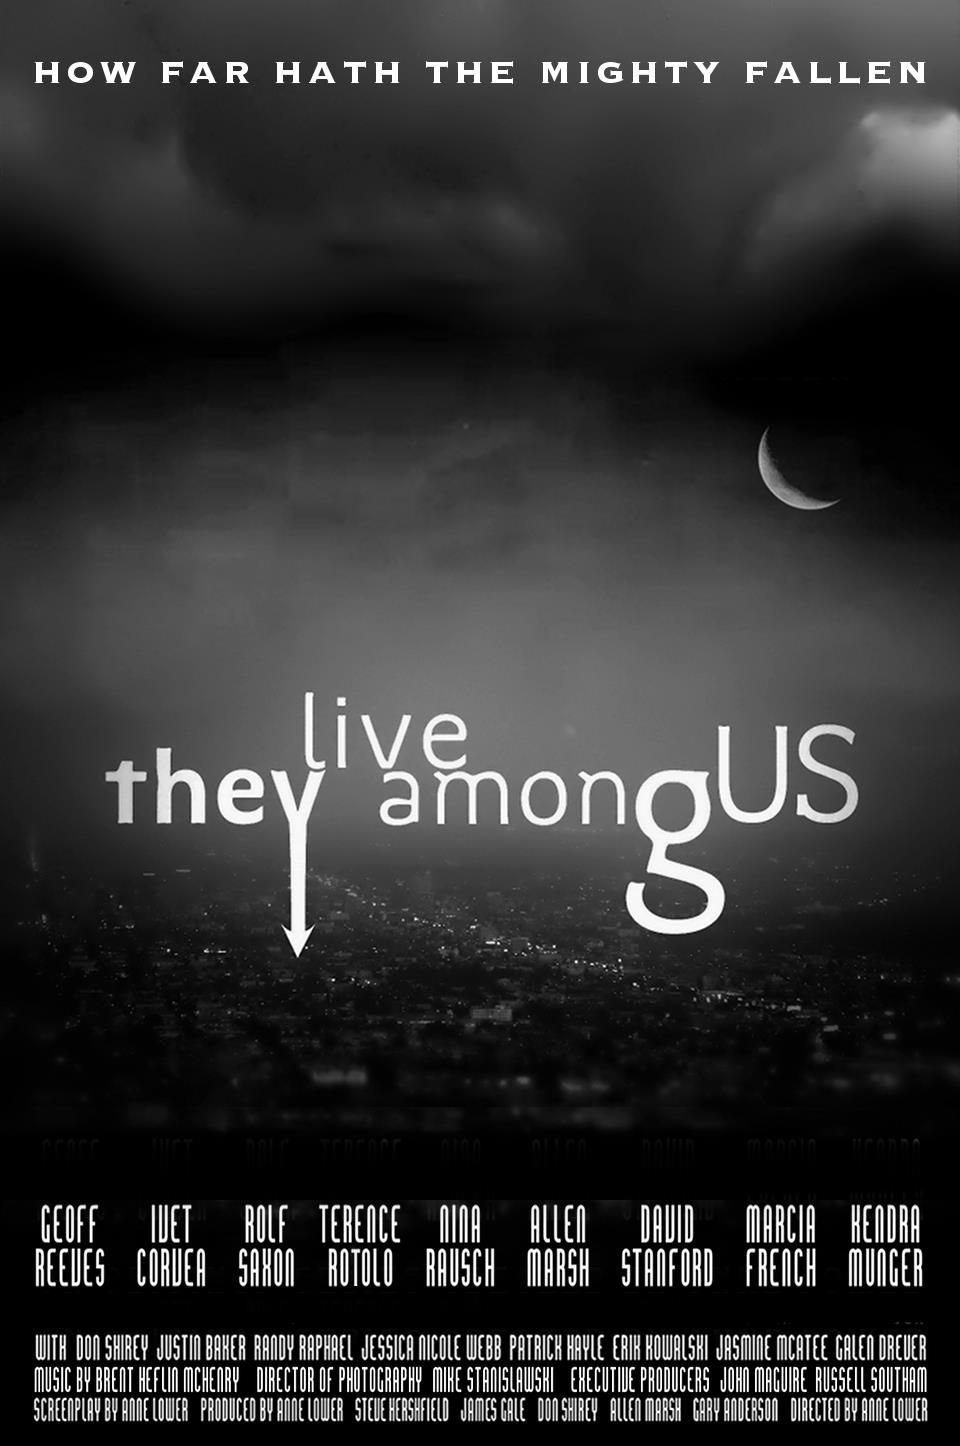 They Live Among Us - web series